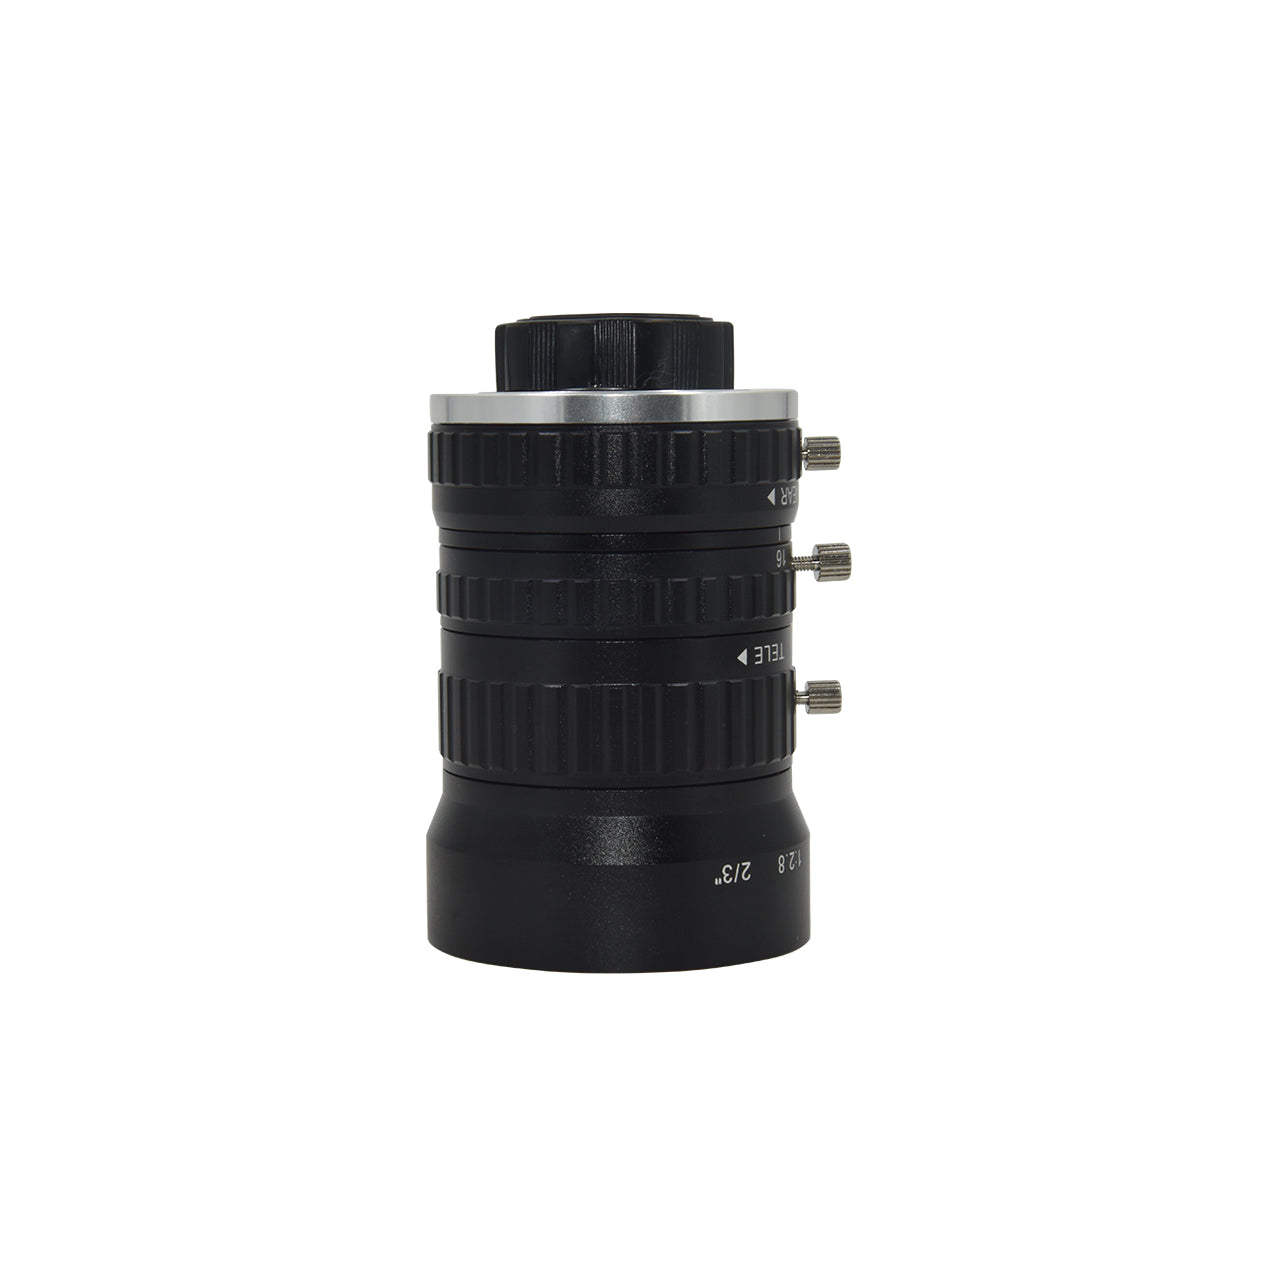 1/1.7" 12MP CS-Mount Zoom Lenses